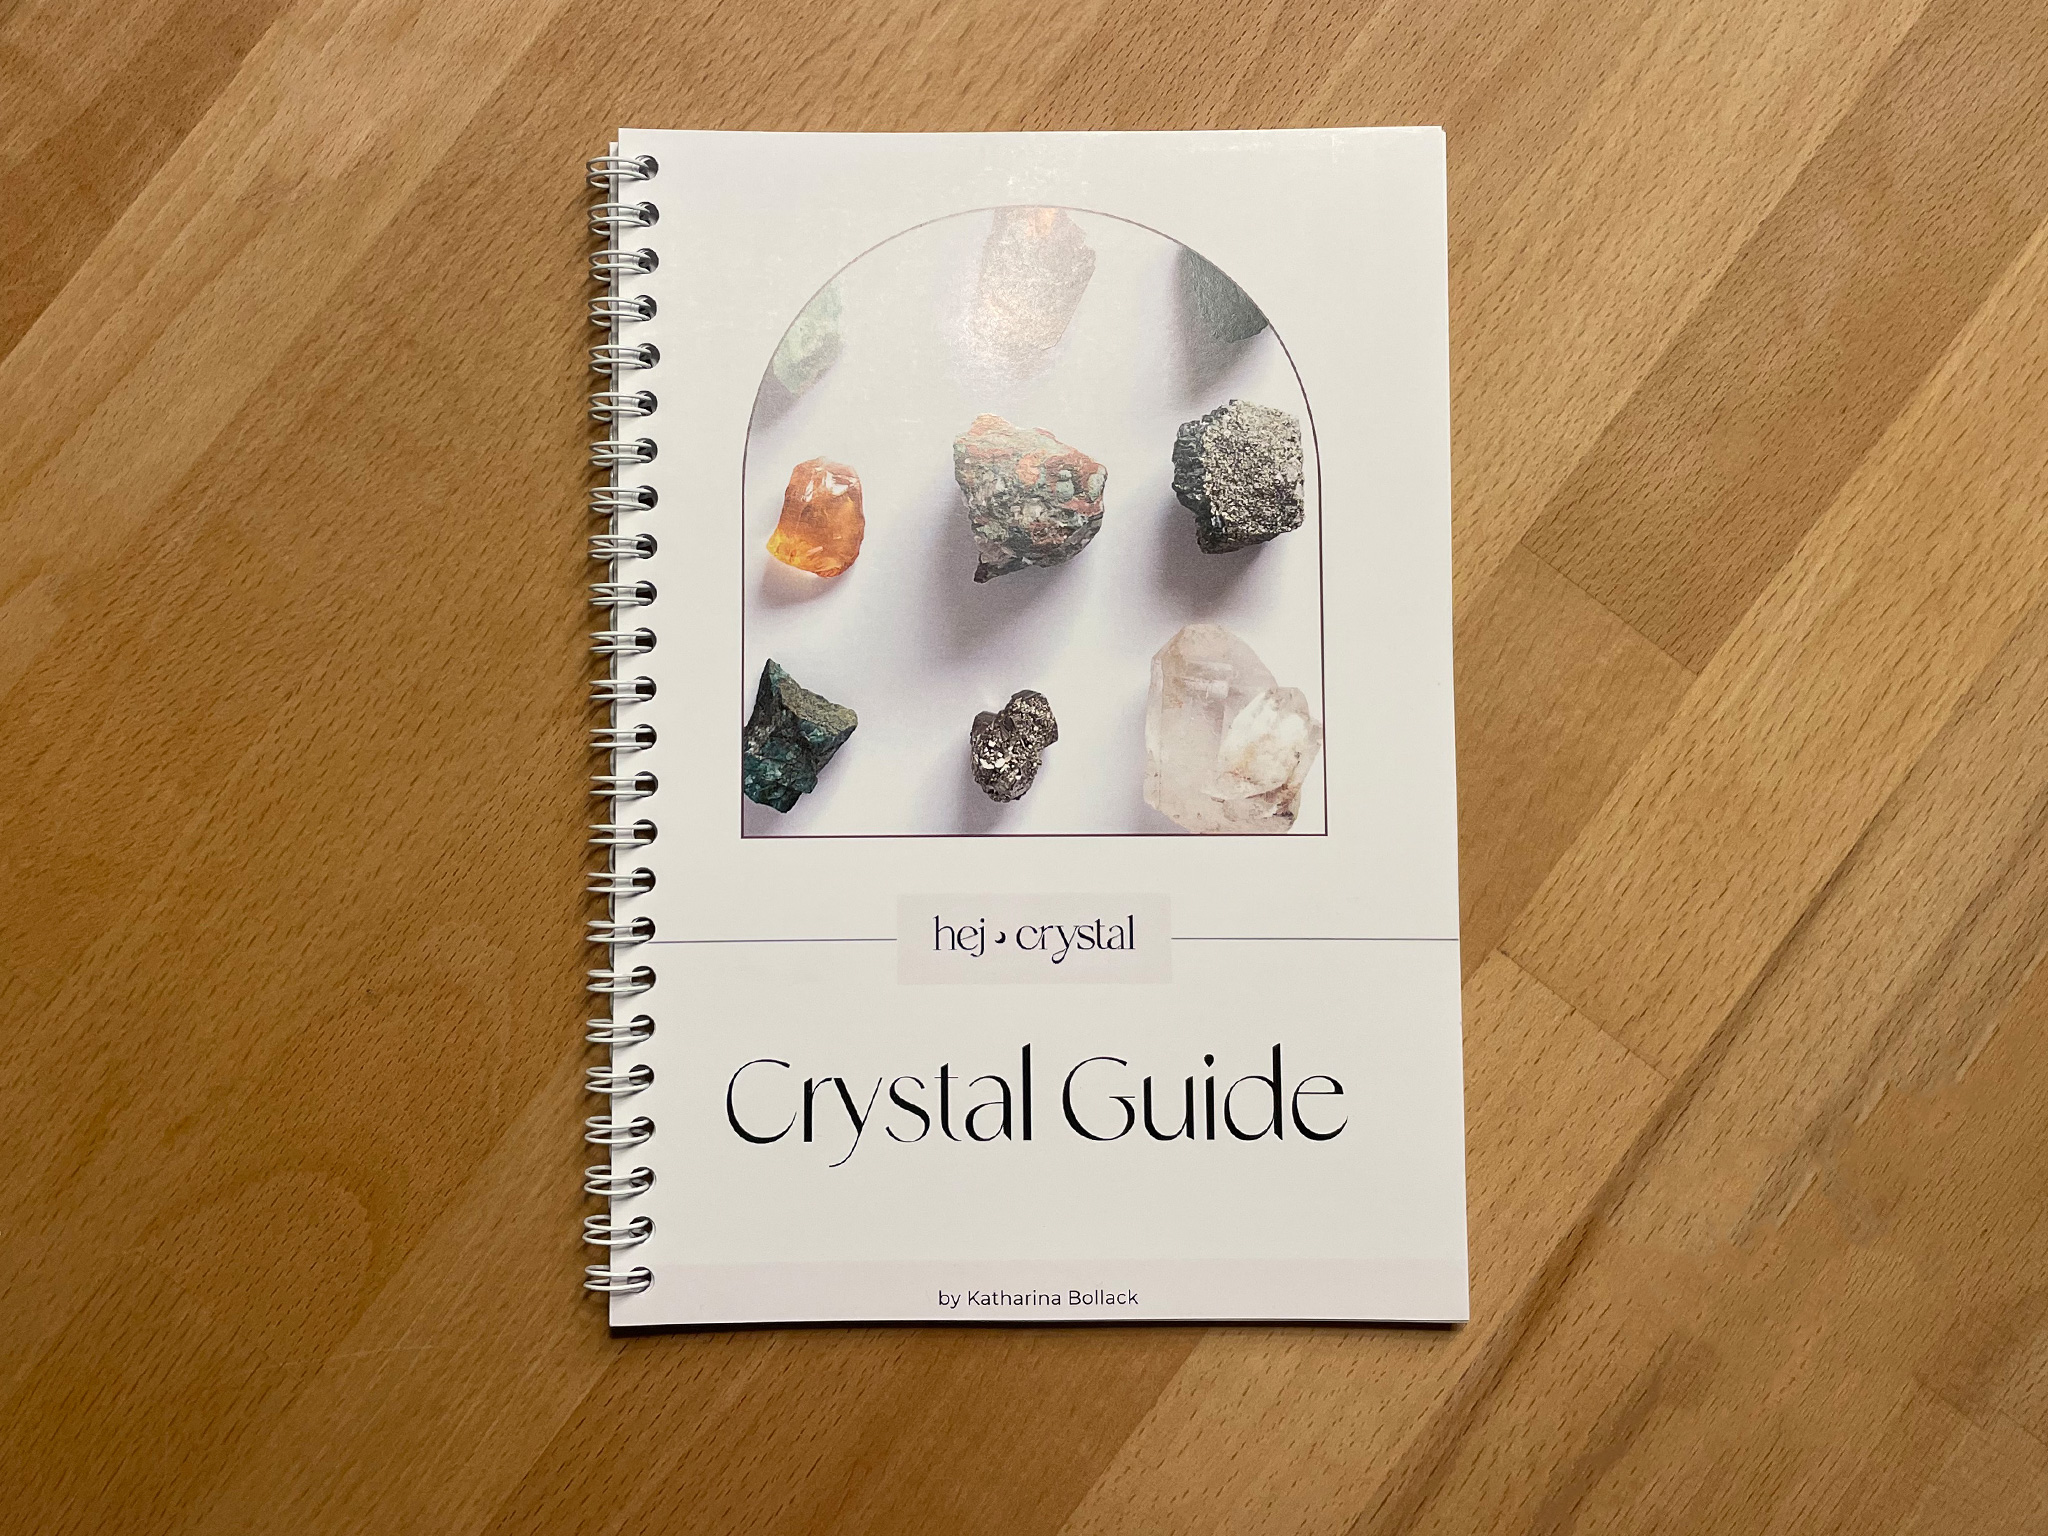 Der Crystal Guide by hej crystal ist als Ergänzung zu den vielen wunderbaren Edelsteinratgebern zu sehen, die es bisher auf dem Markt gibt.